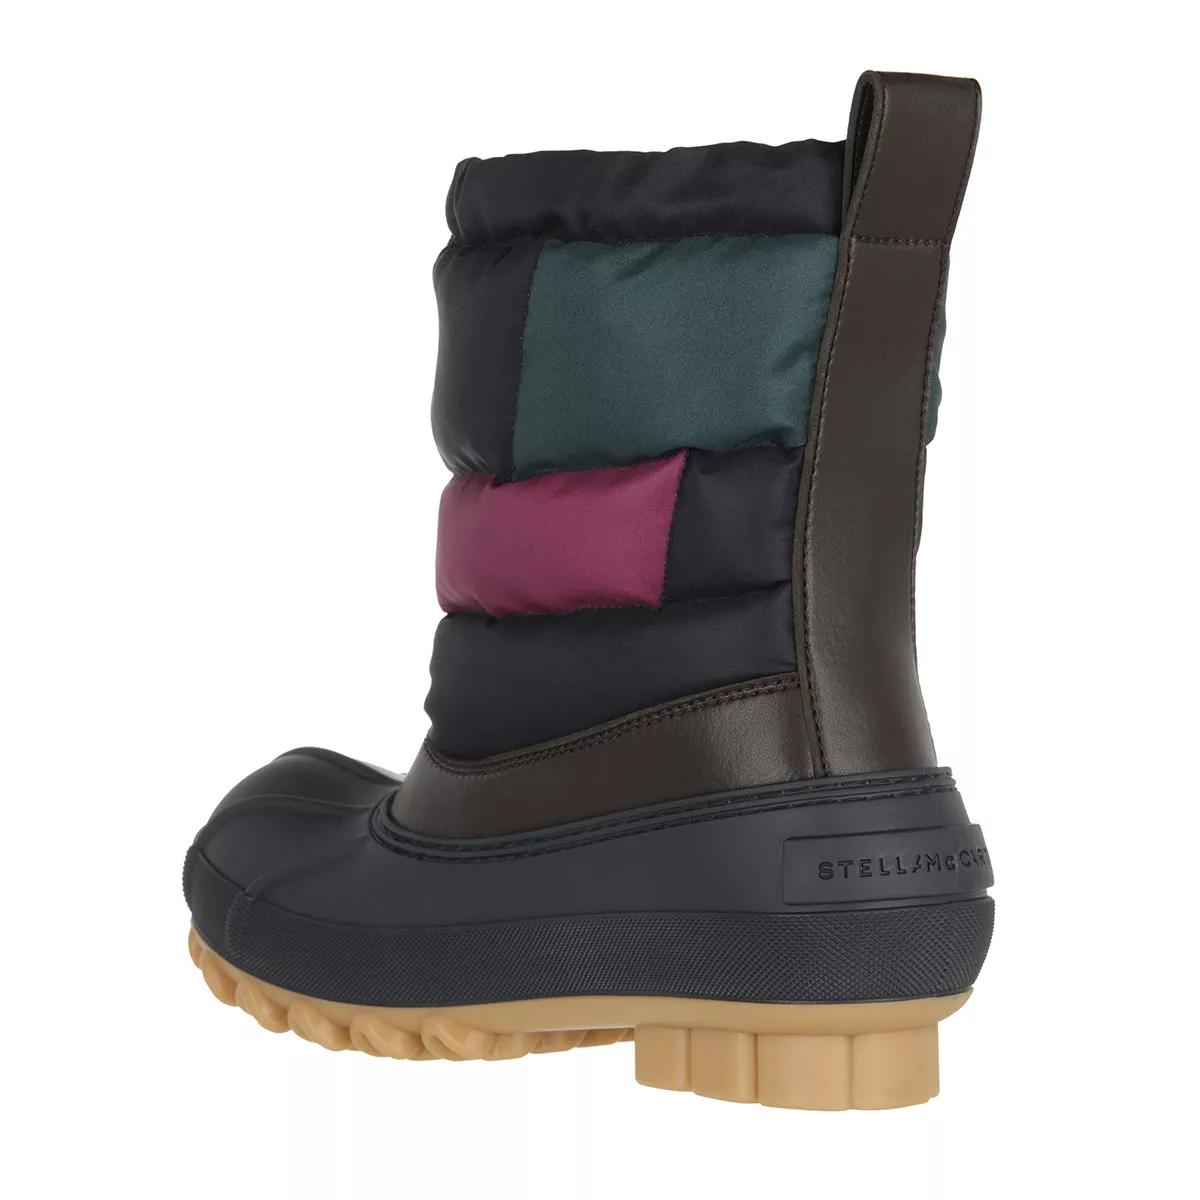 Stella McCartney Boots & Stiefeletten - Boots - Gr. 37 (EU) - in Bunt - für Damen von Stella Mccartney